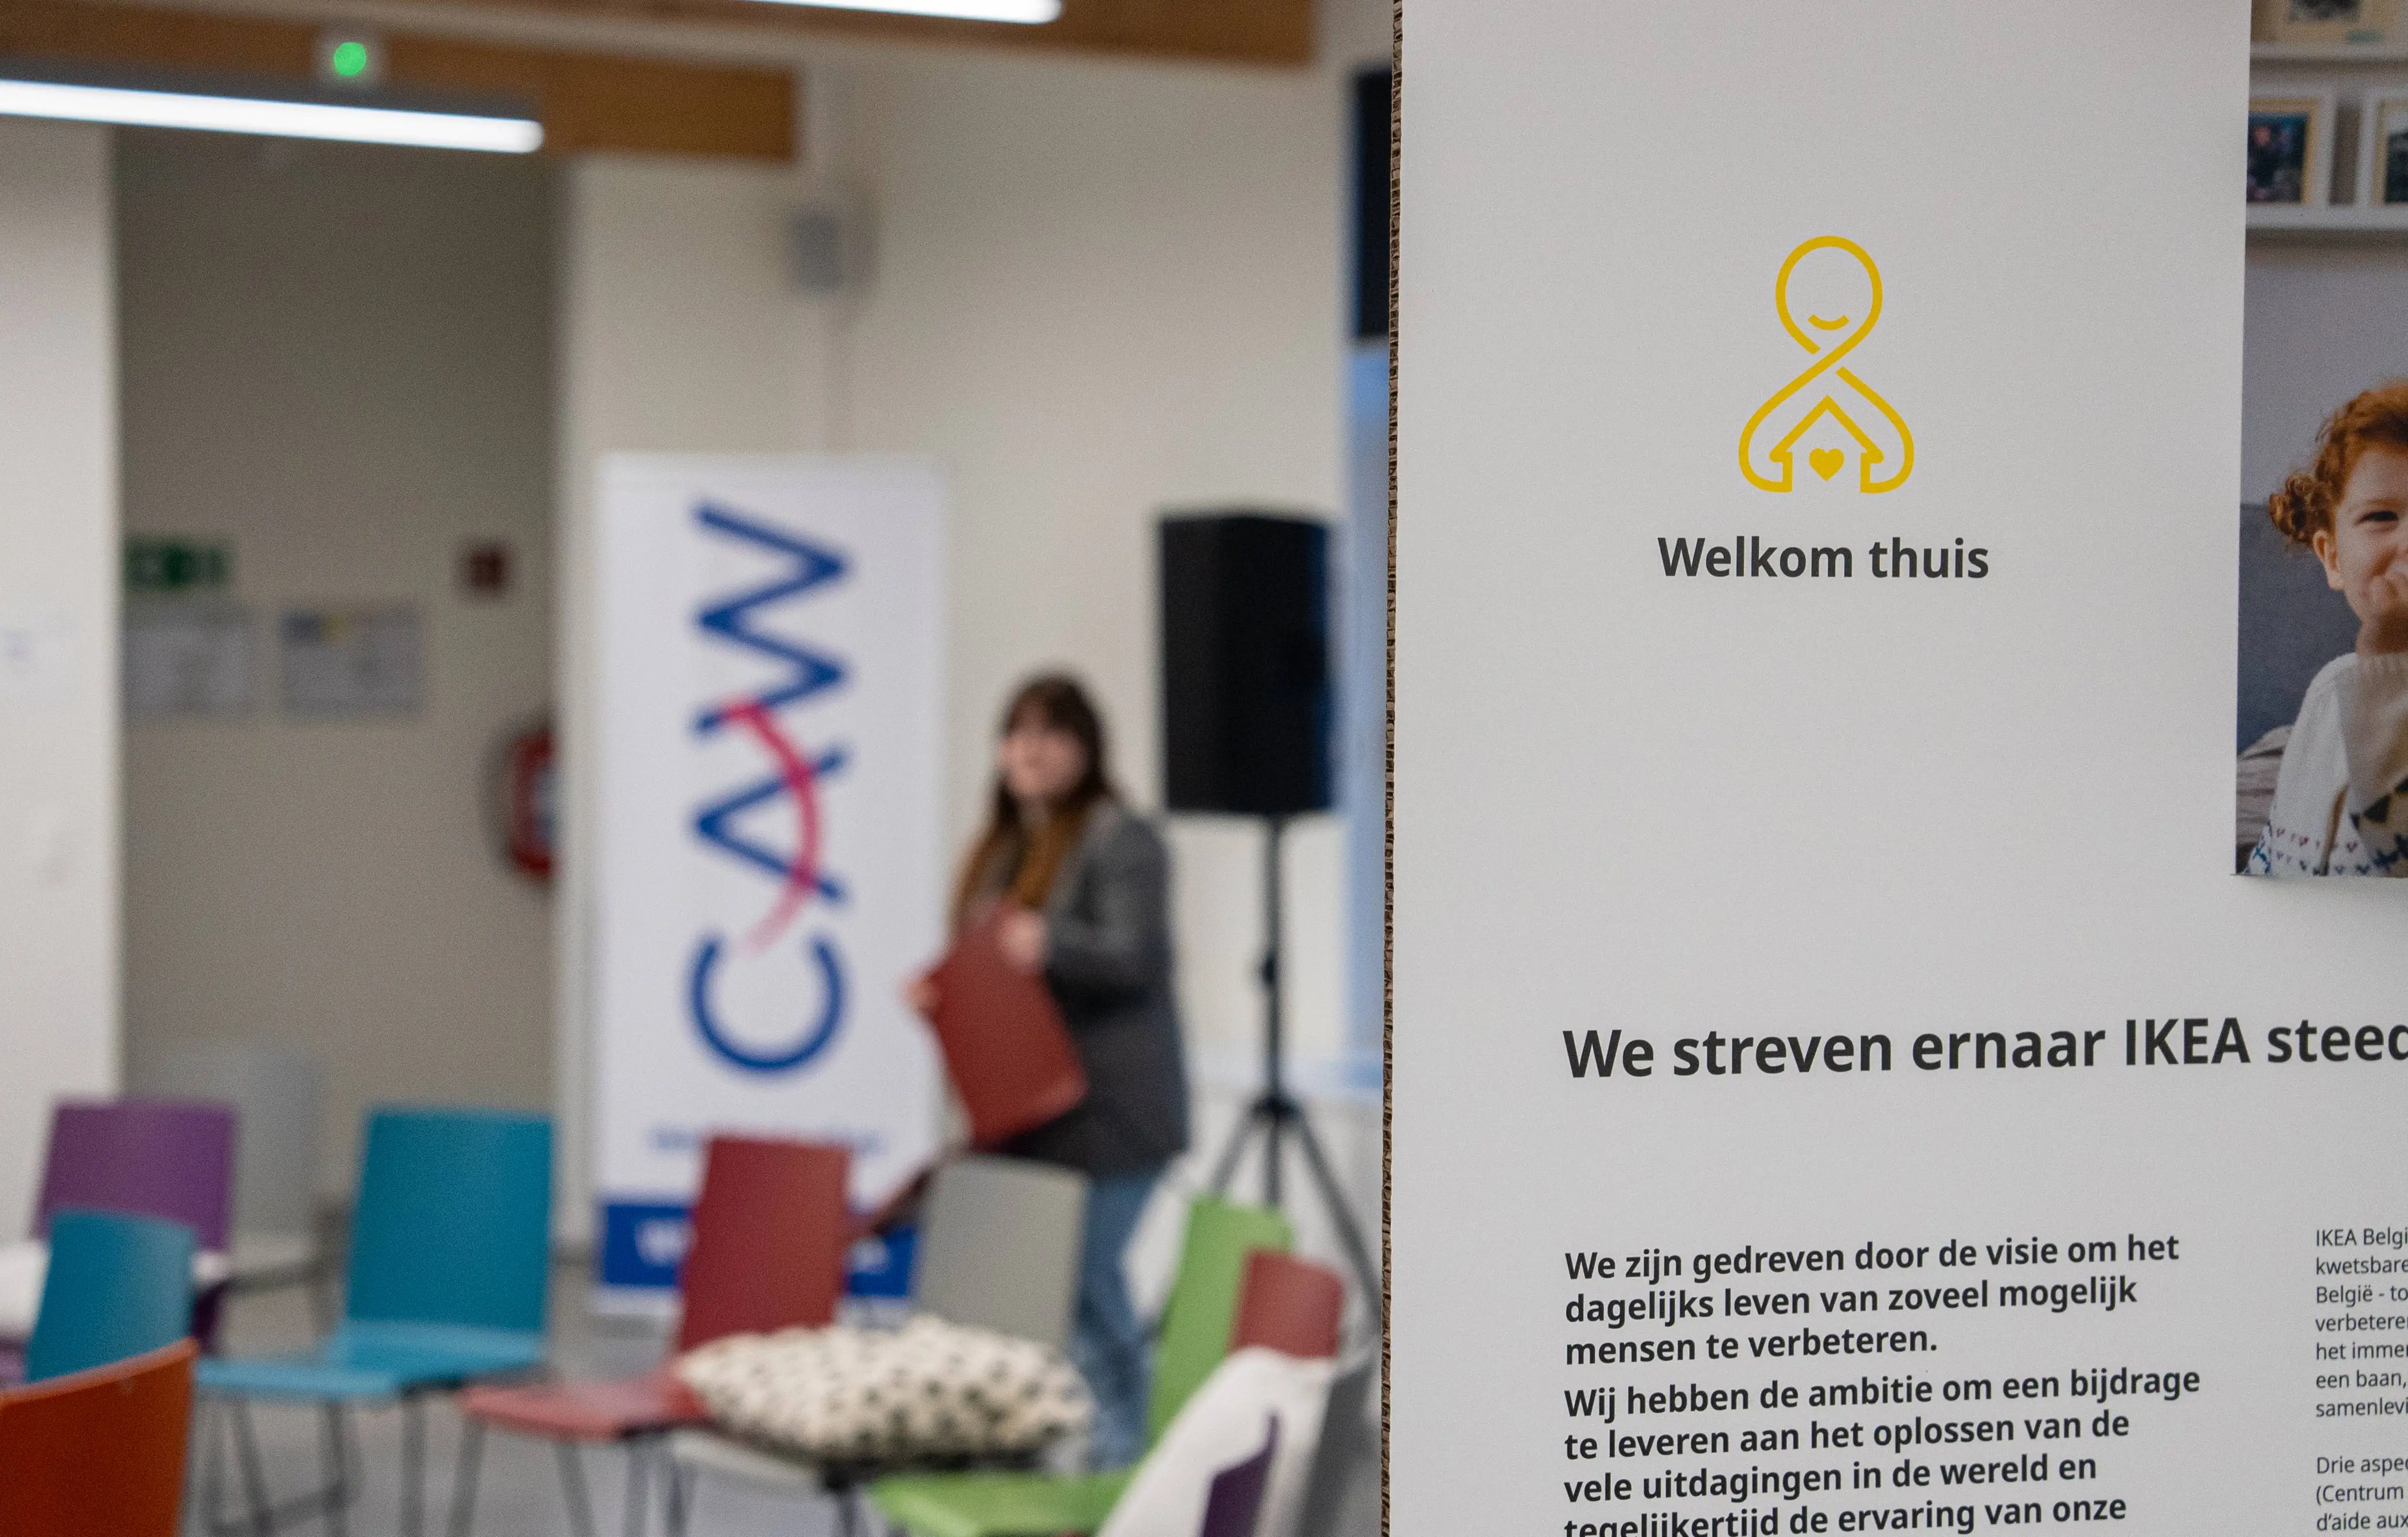 Décoration de l’événement avec écrit “Welkom Thuis” étant le nom du projet de l’événement et avec en fond de l’image la salle vide avant l’arrivée des participants